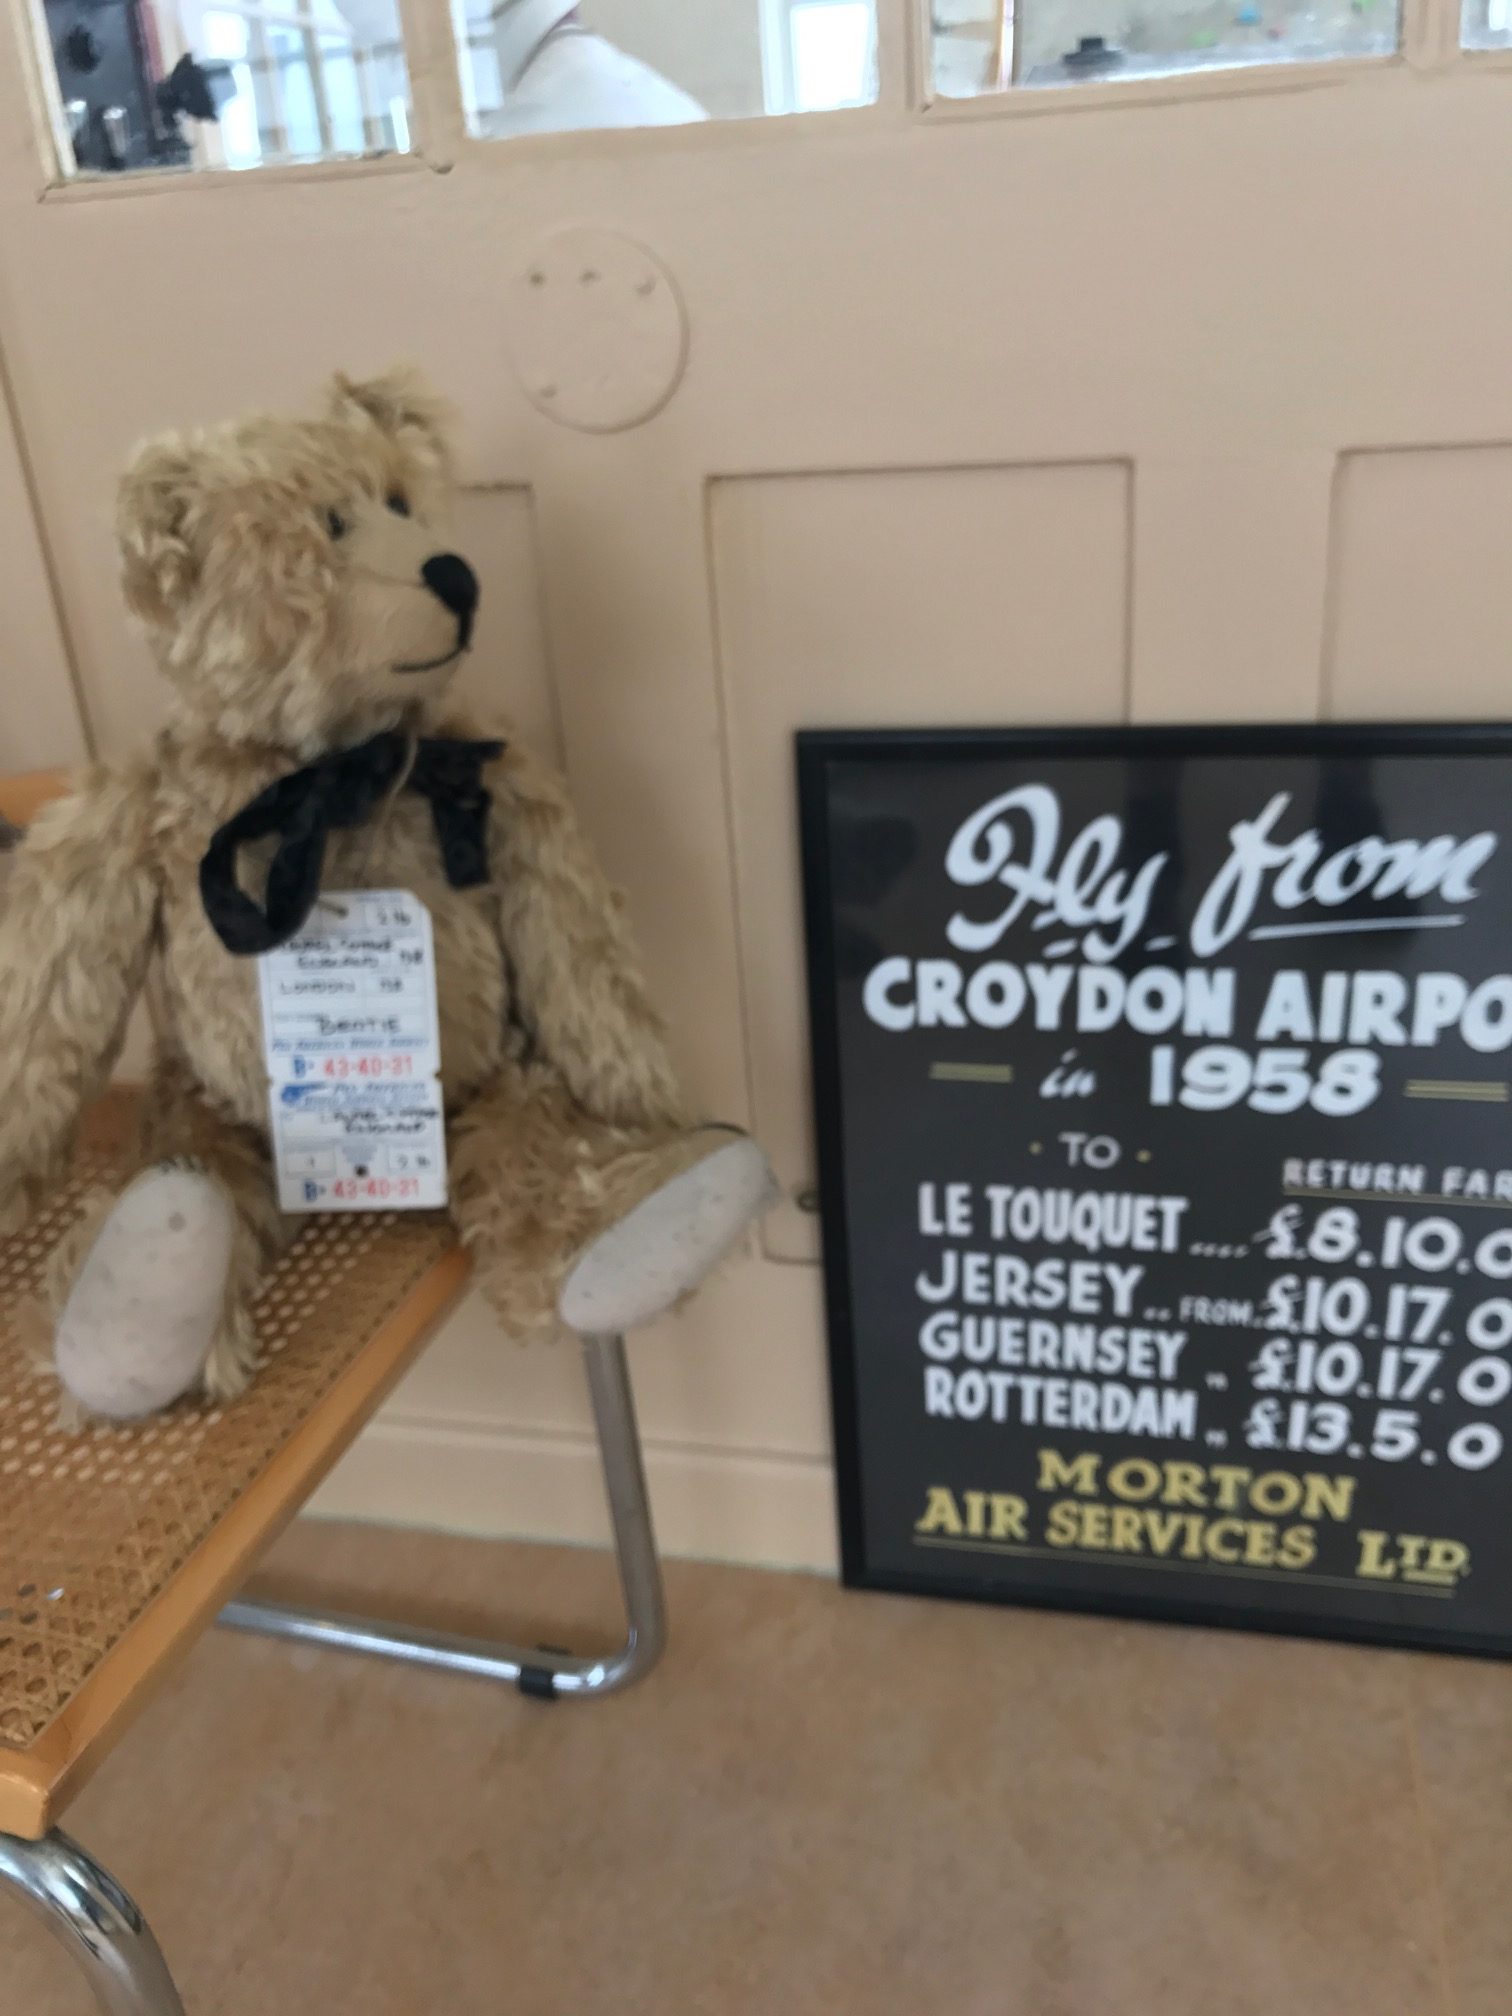 Croydon Airport: 1958 prices!